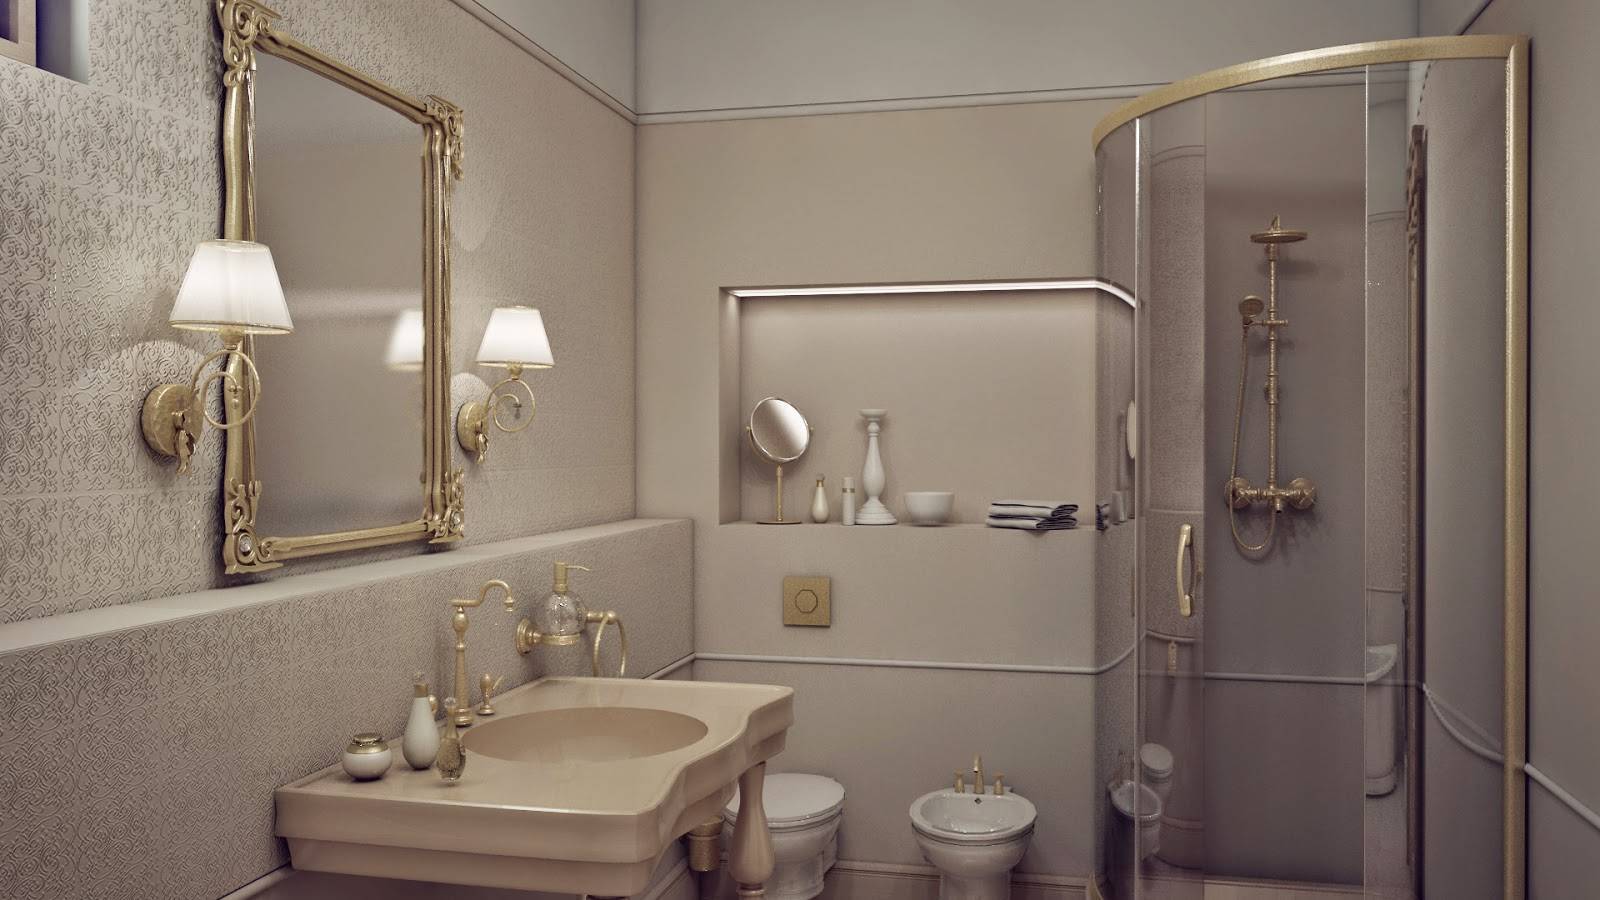 Обои для ванной комнаты: плюсы и минусы, виды, дизайн, 70 фото в интерьере